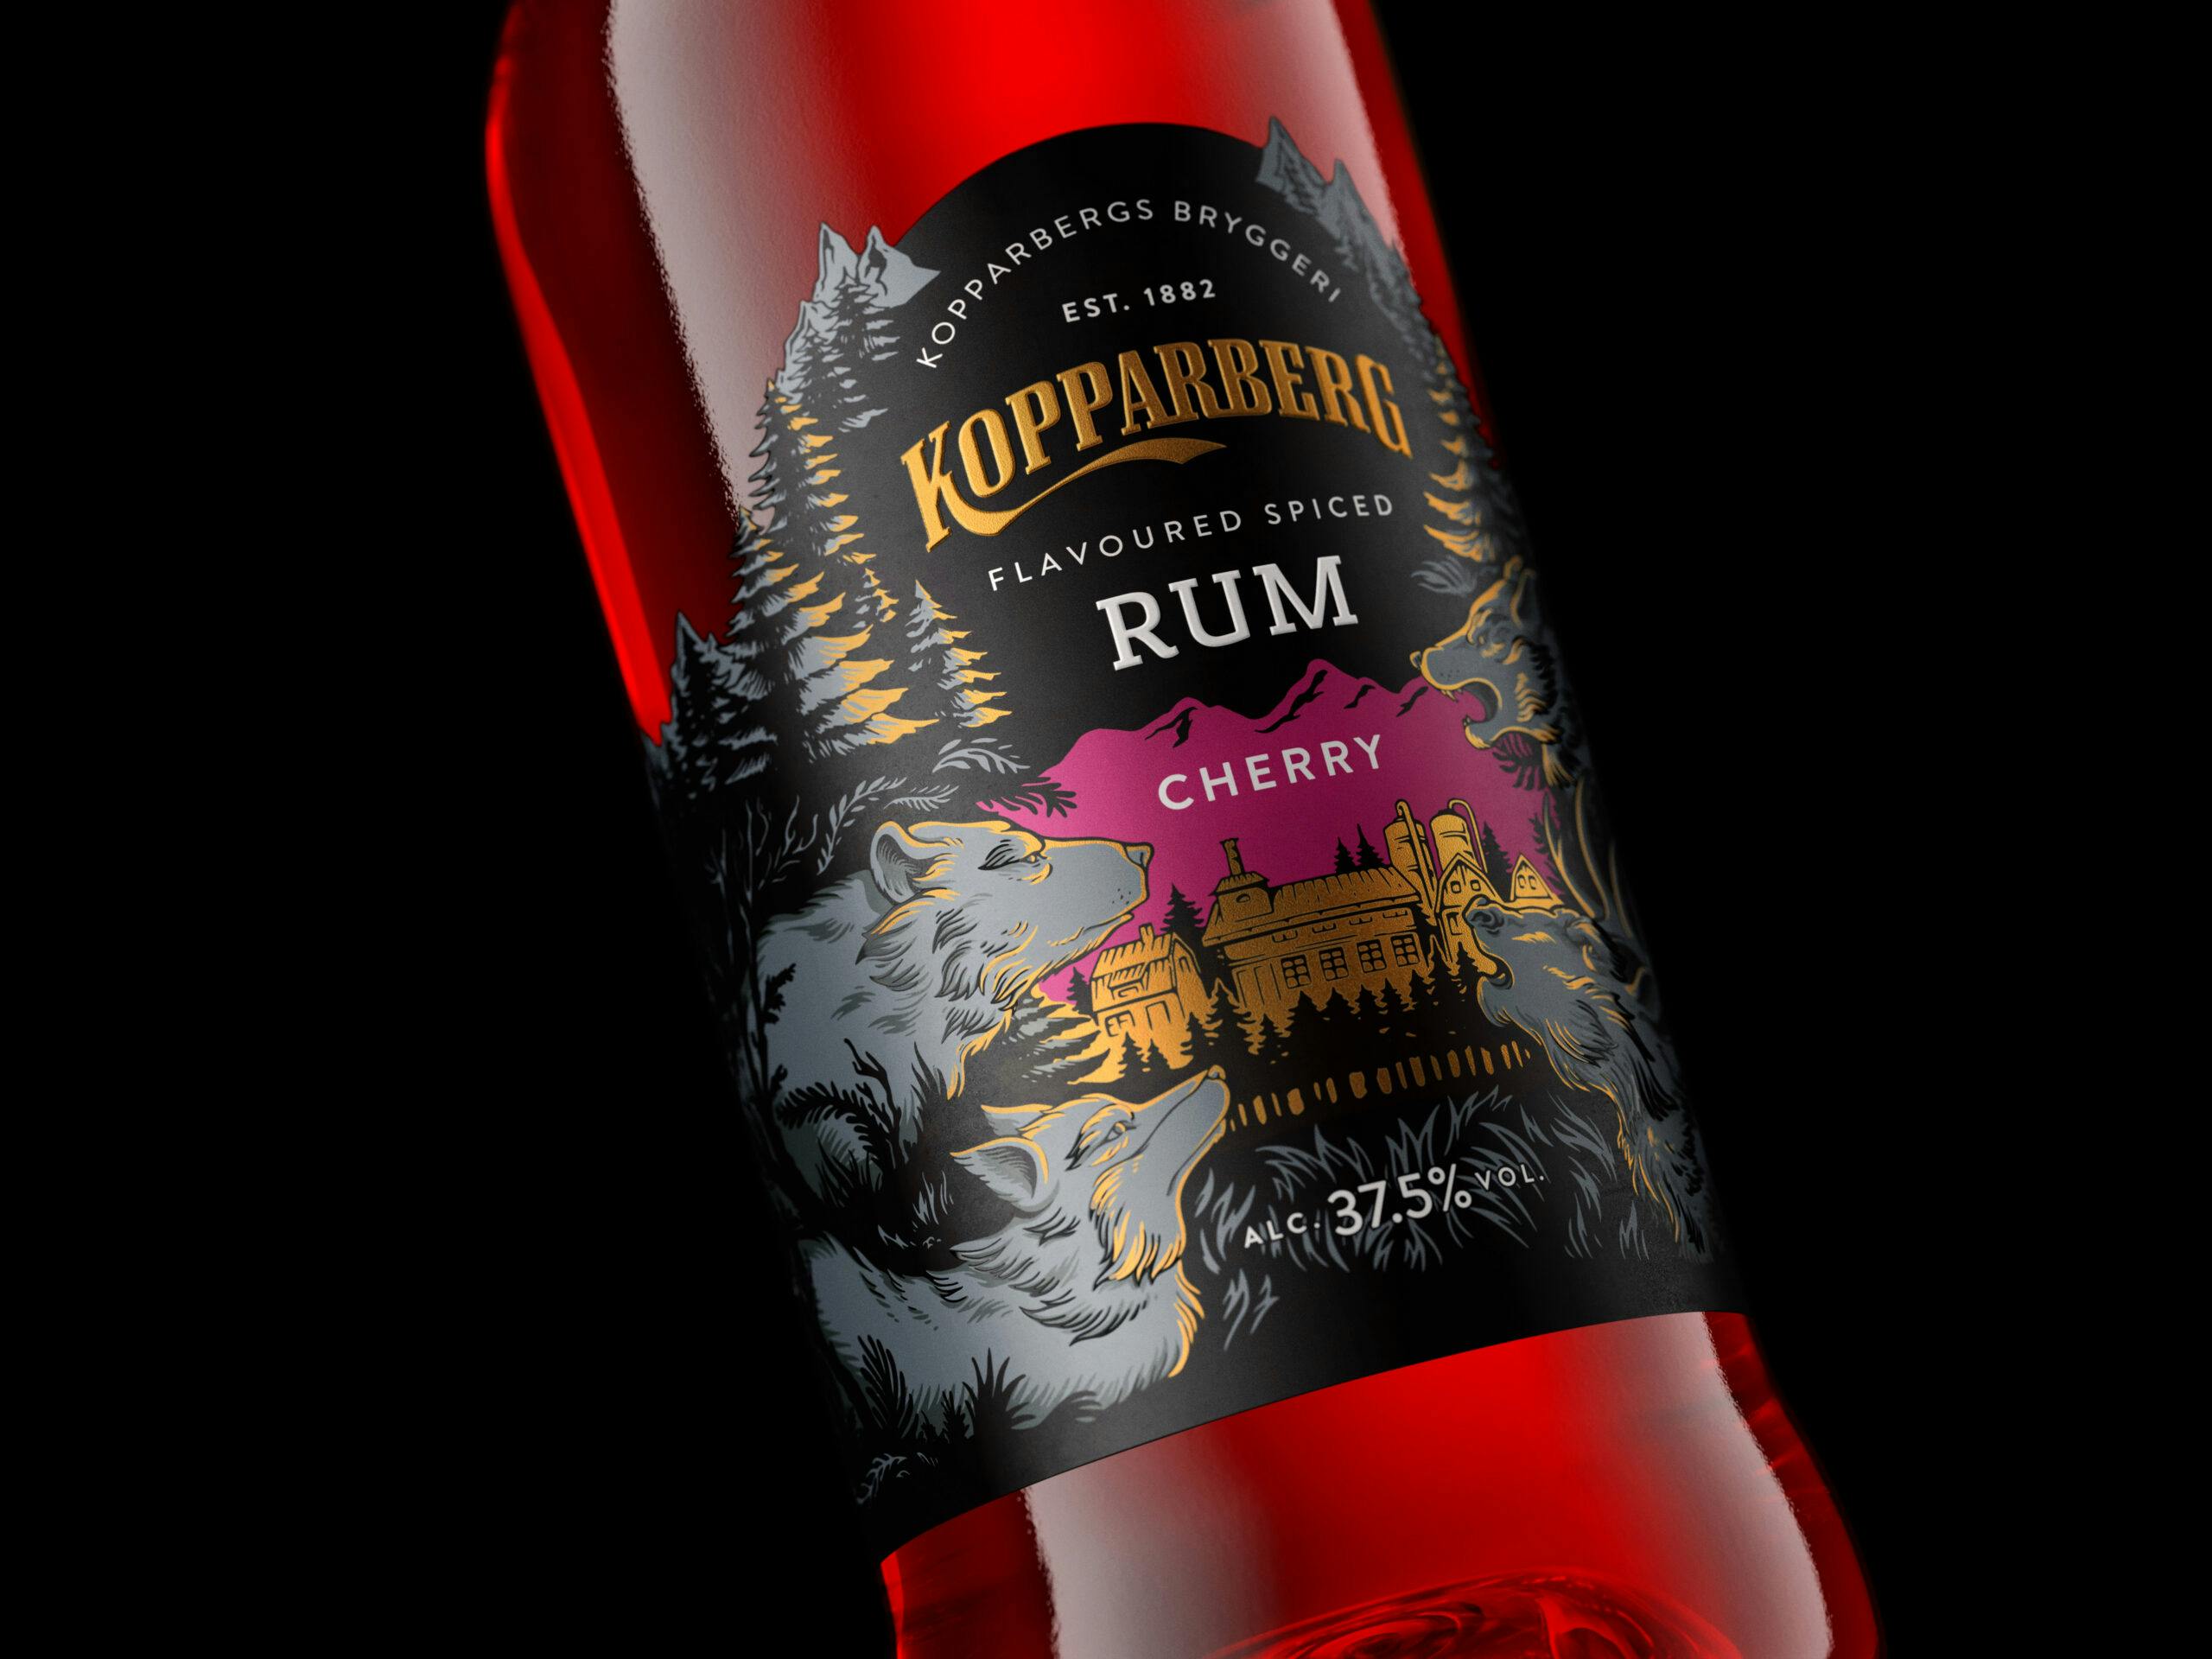 Image of Mit diesem bildschön verzierten Etikett geht Kopparberg Cherry Rum auf’s Ganze!